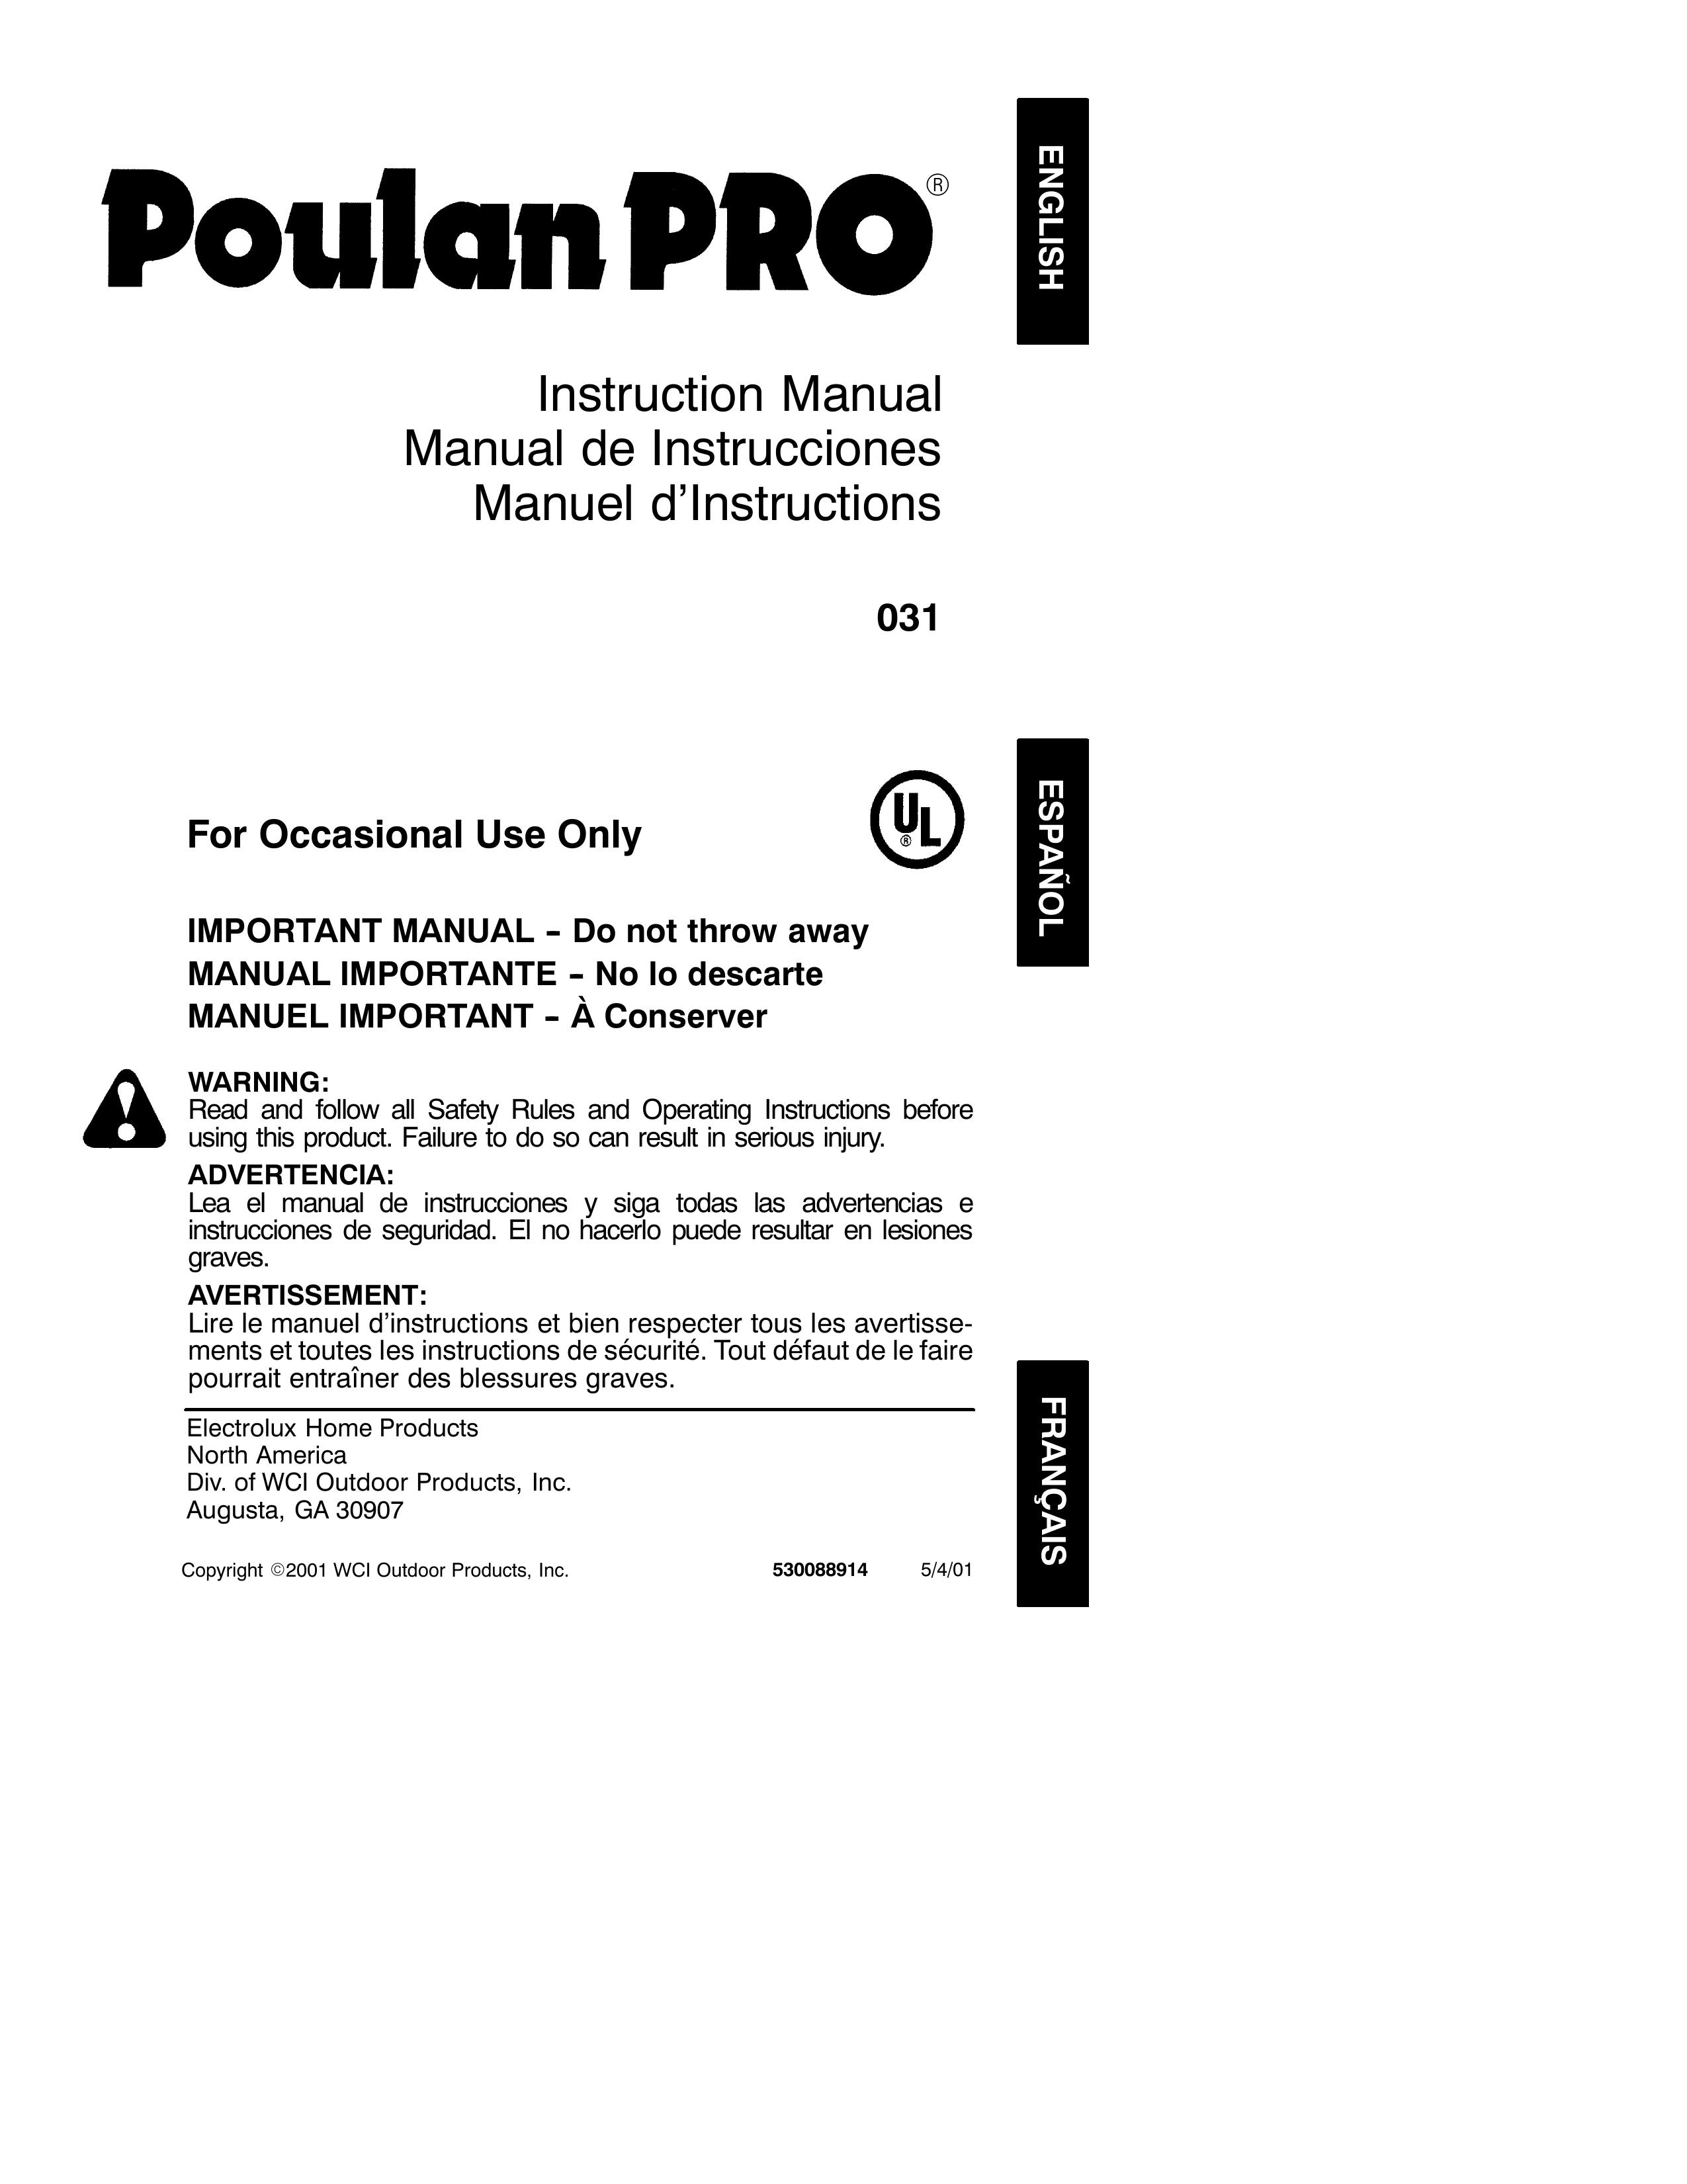 Poulan 031 Trimmer User Manual